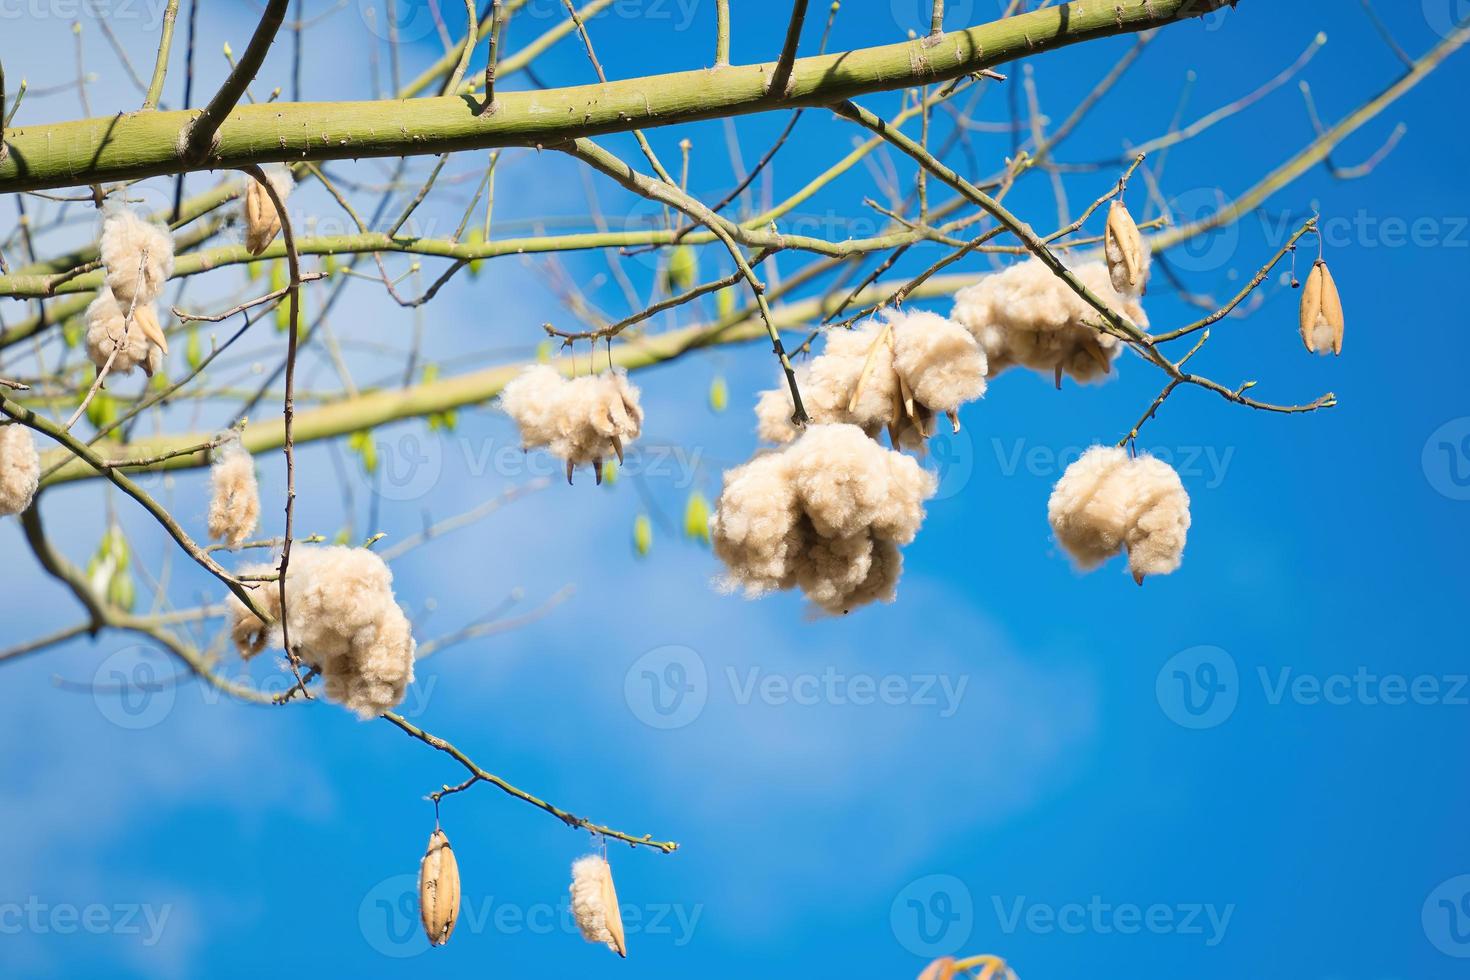 weiße seidenbaumwolle ceiba pentandra, kapuk randu javanese, die mehrjährige frucht kann zur herstellung von matratzen und kissen verwendet werden. foto